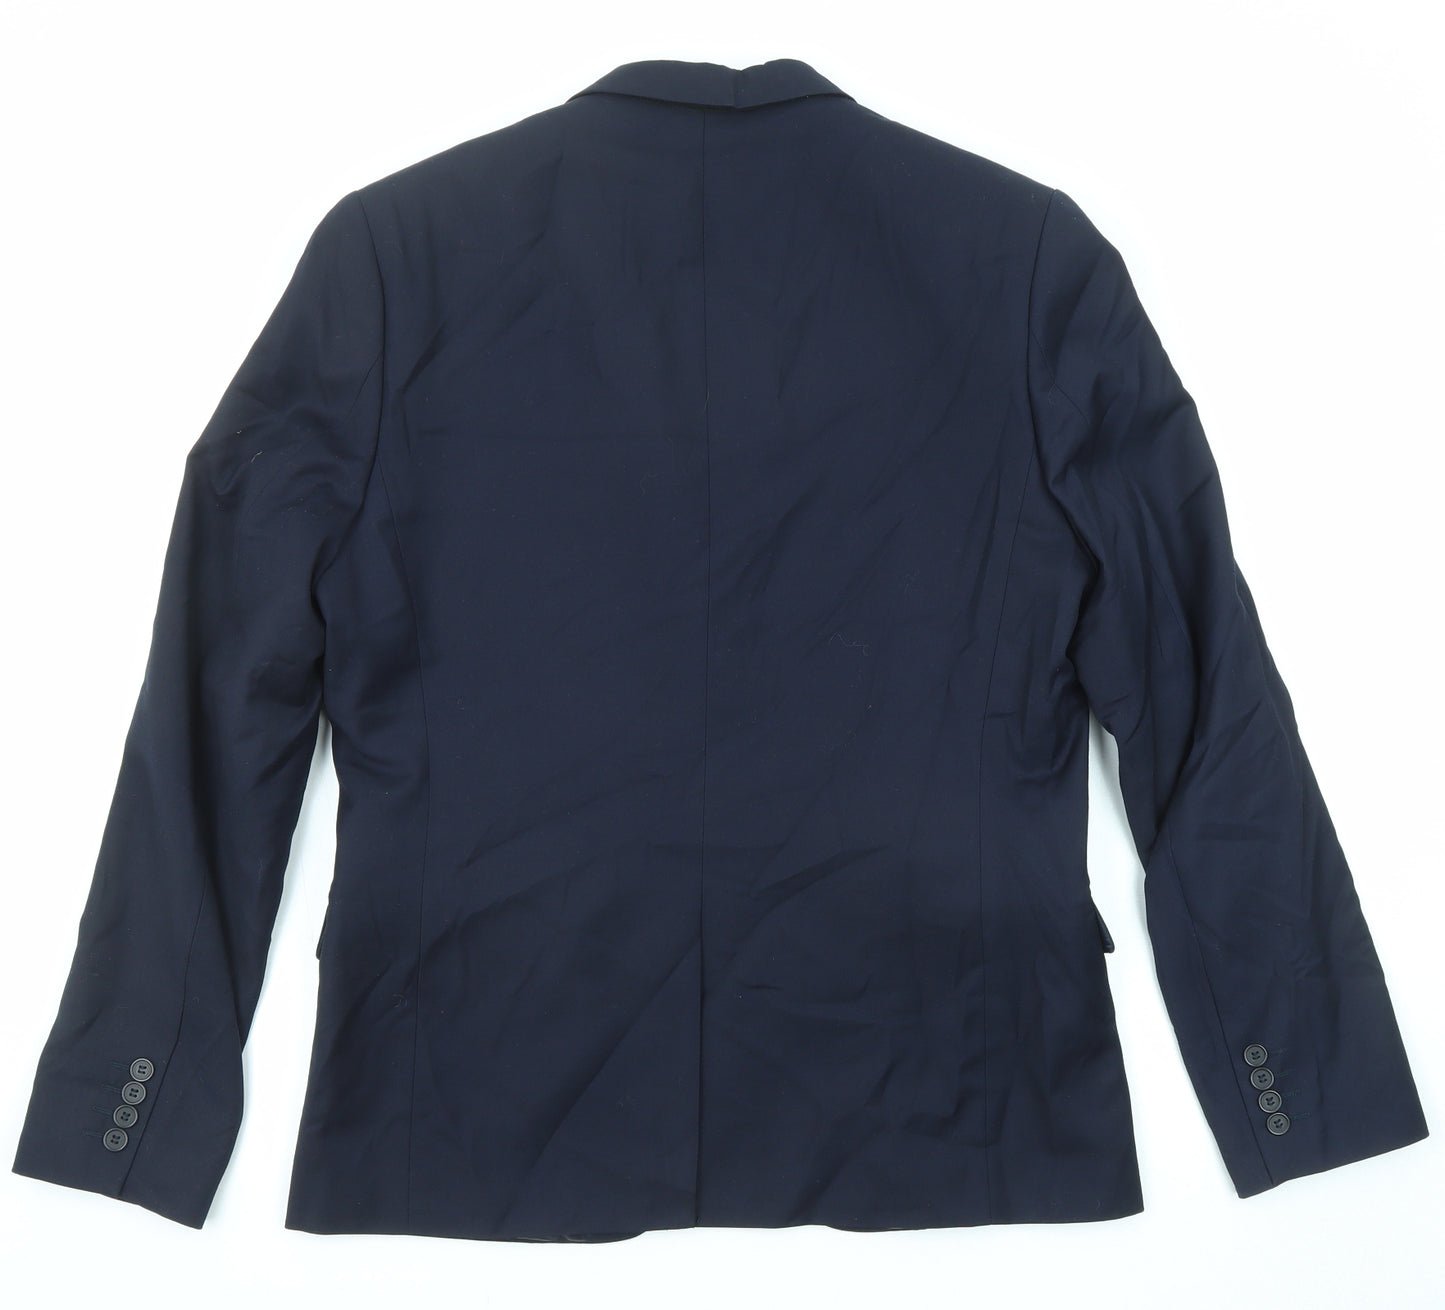 H&M Mens Blue Polyester Jacket Suit Jacket Size 50 Regular